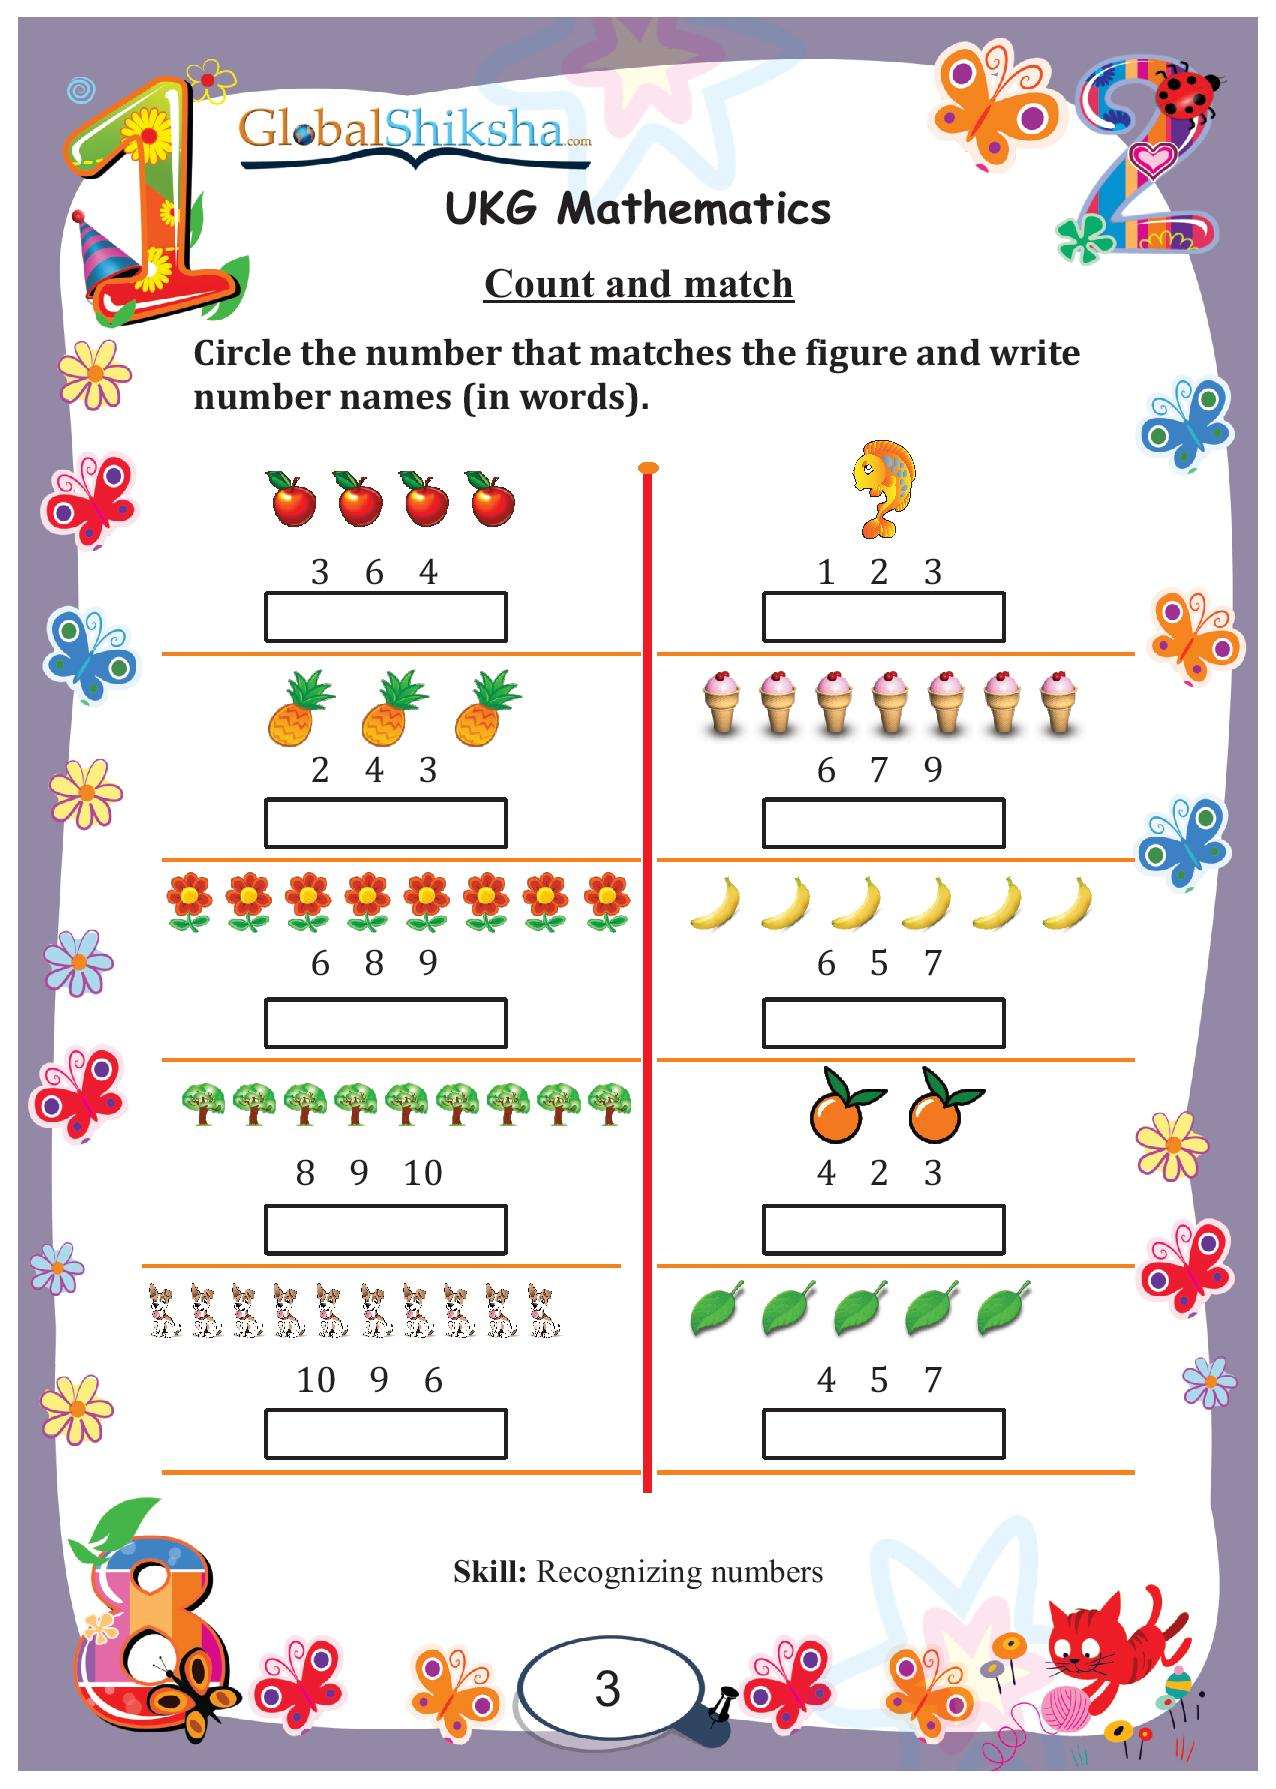 Printed Worksheets for UKG - Maths ( 100 worksheet + 1 parental manual )